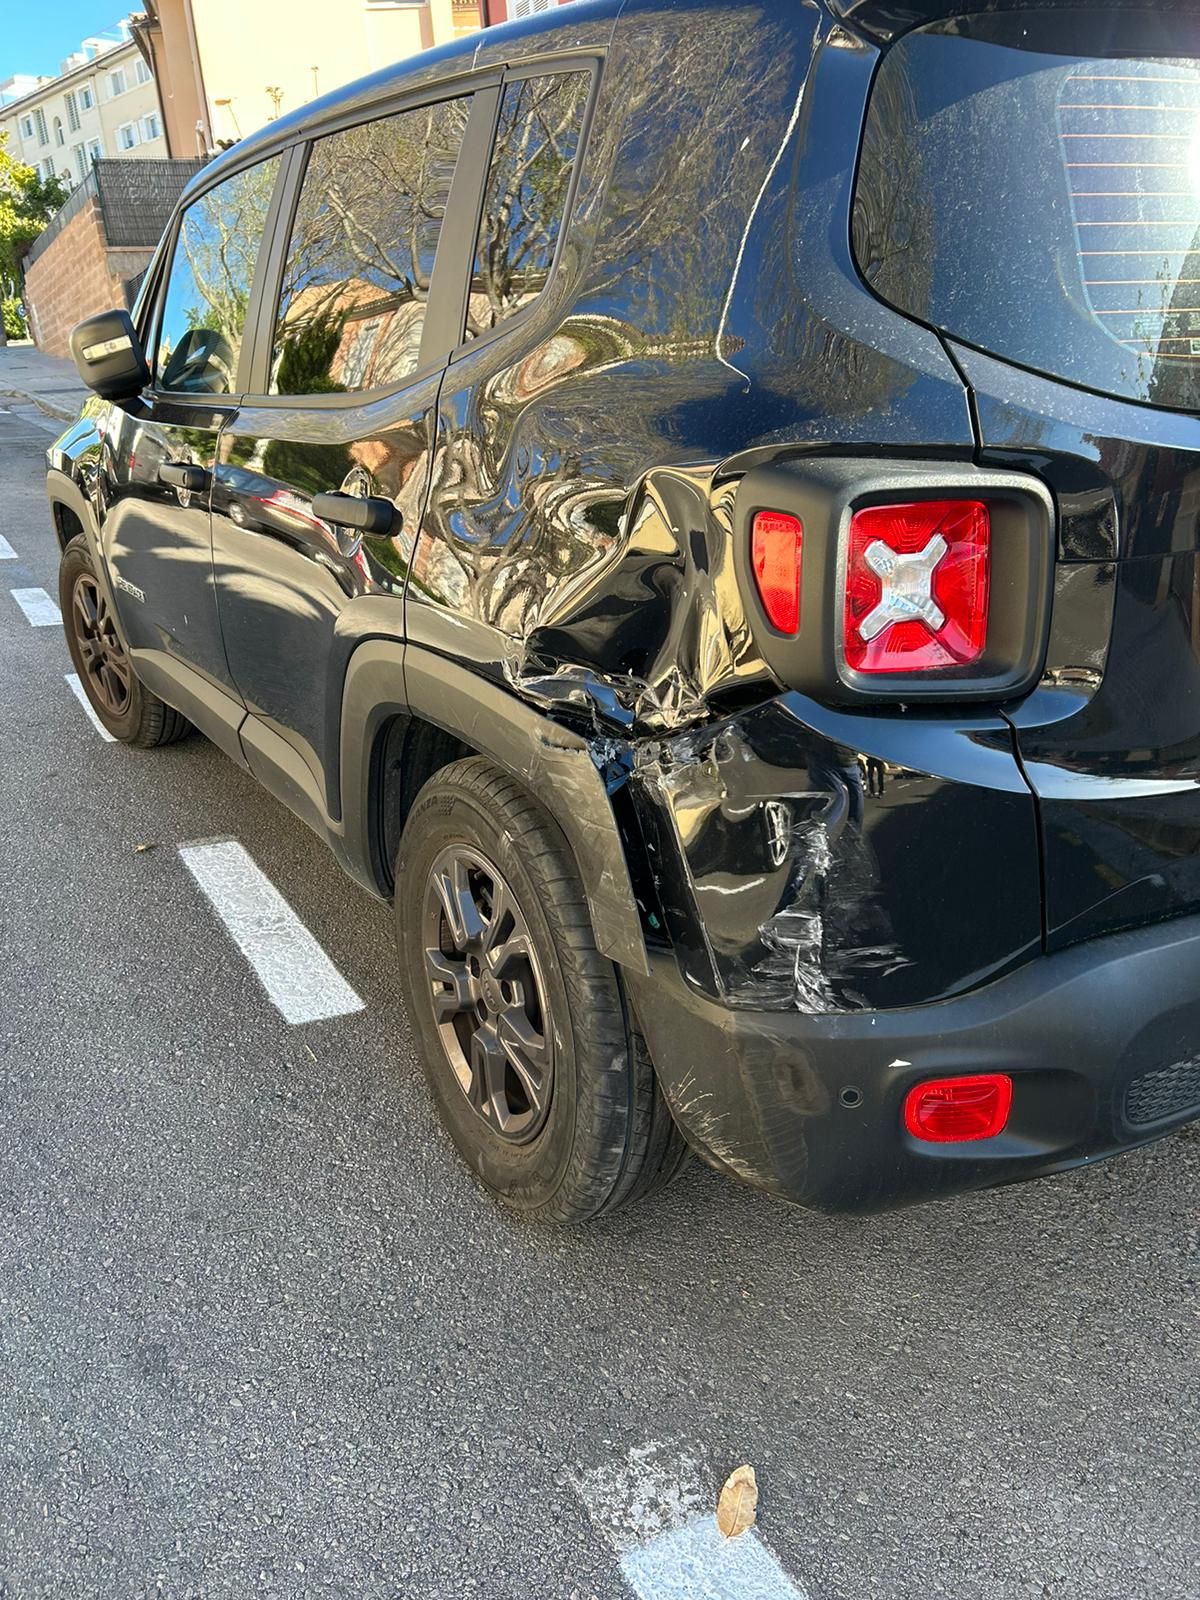 Espectacular accidente de tráfico en Son Xigala, en Palma